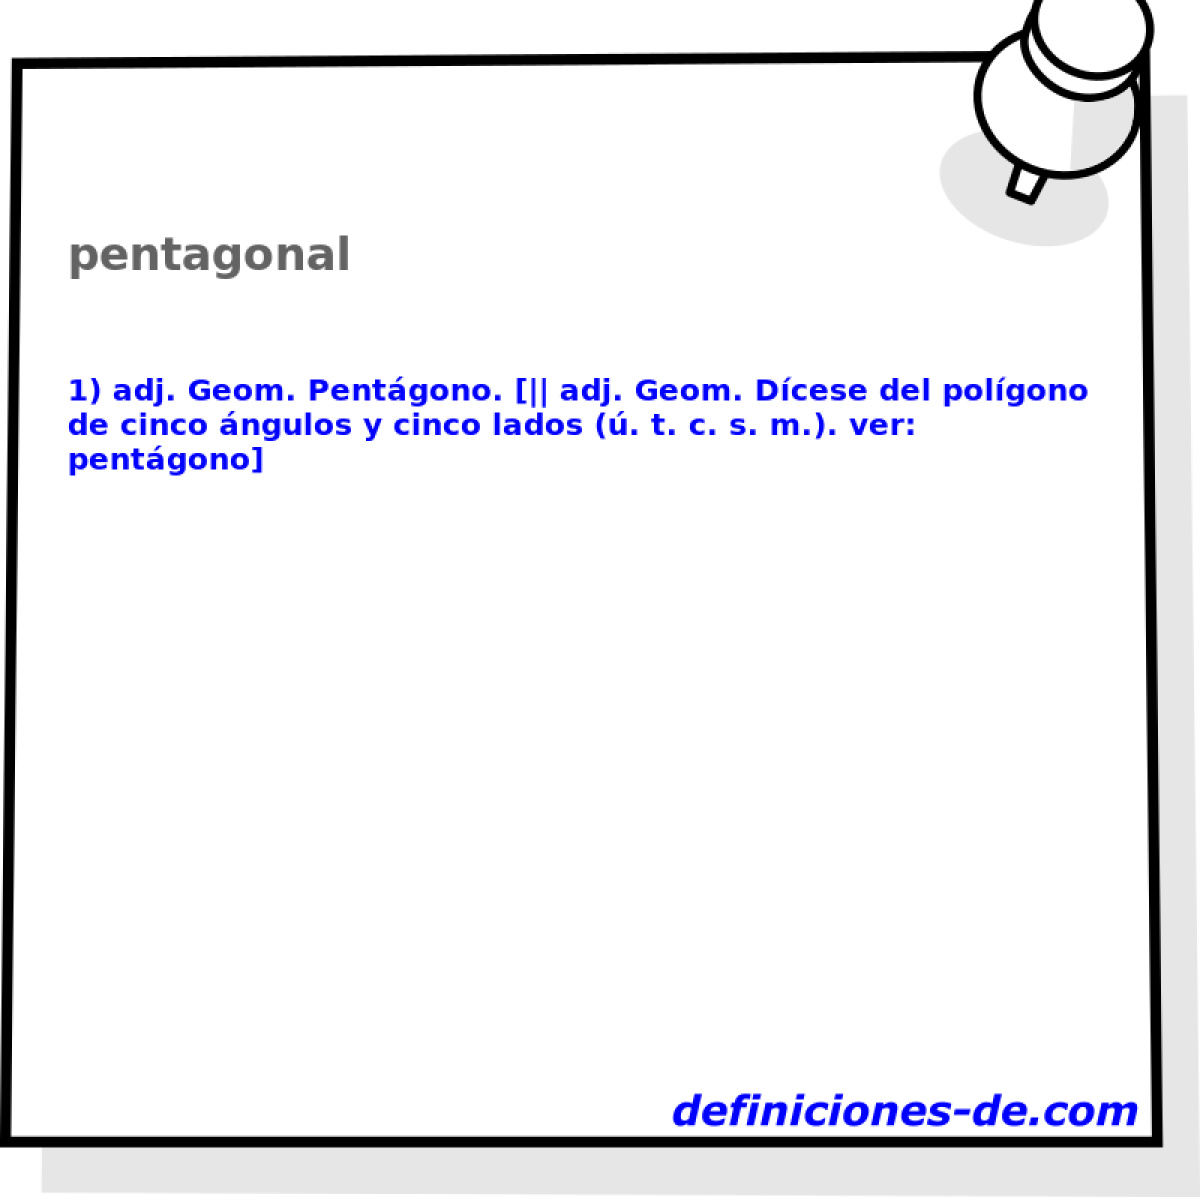 pentagonal 